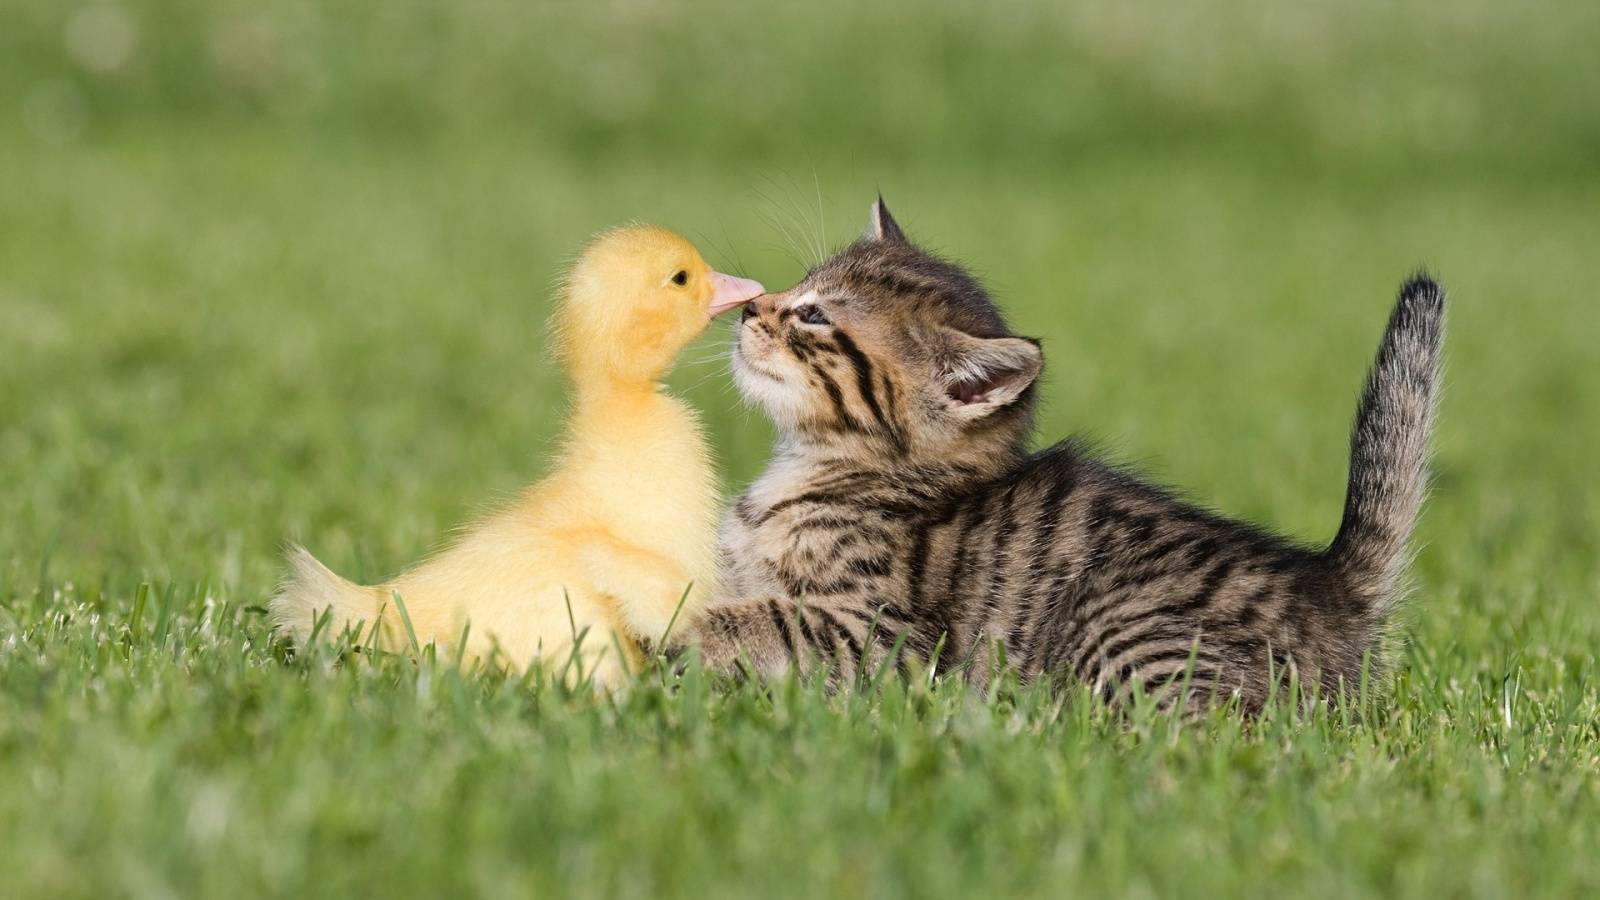 cats-birds-friends